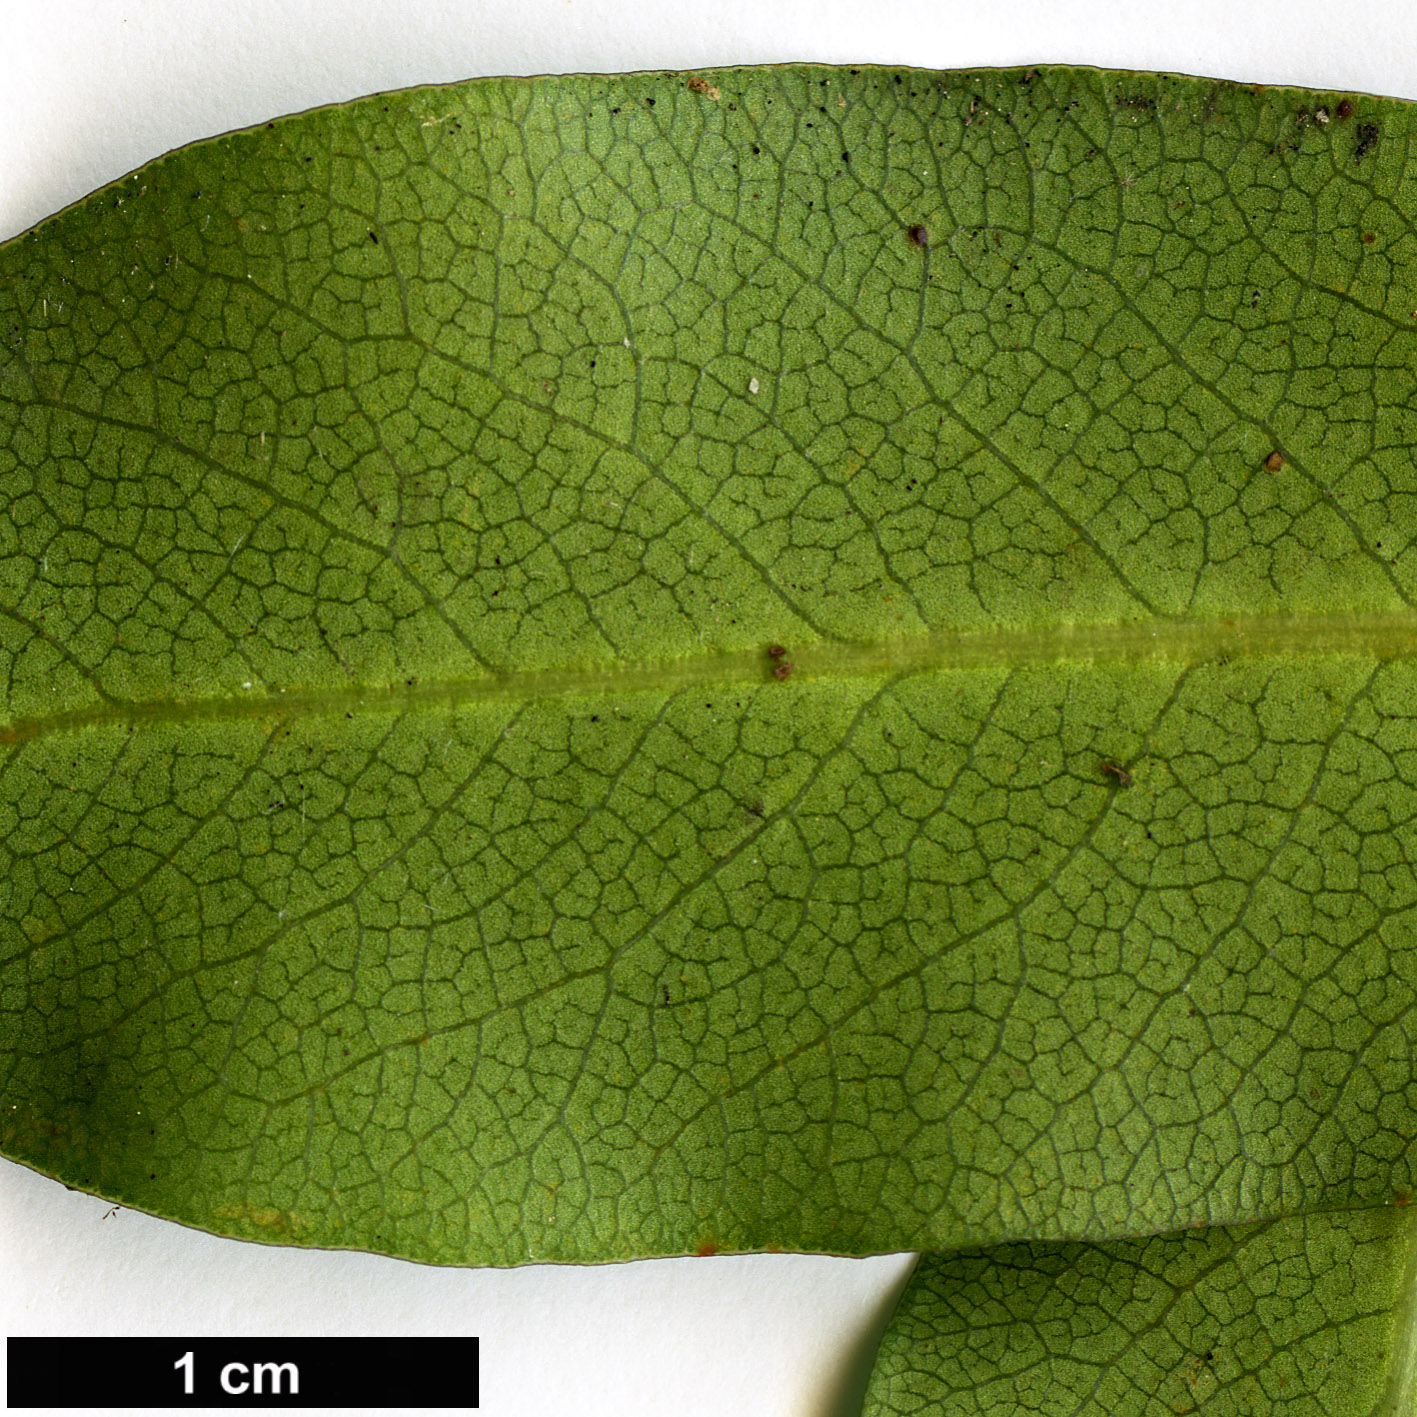 High resolution image: Family: Pittosporaceae - Genus: Pittosporum - Taxon: buchananii